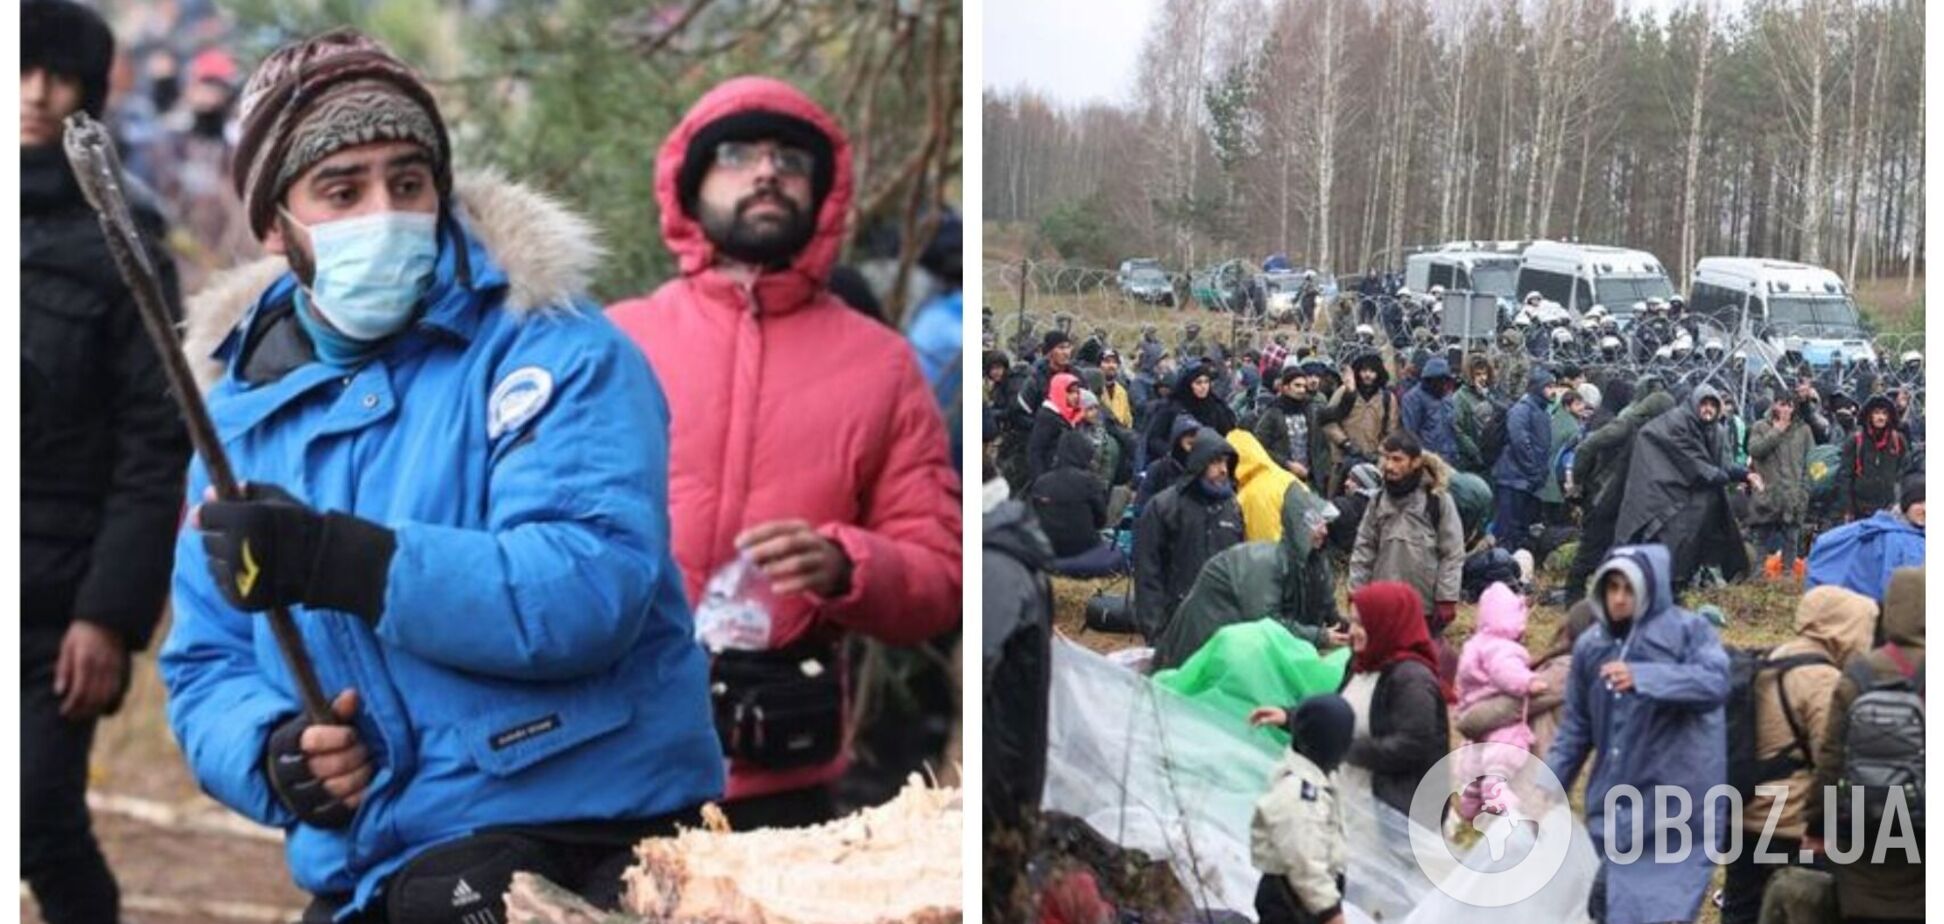 Носят куртки за $1000? В сети разгорелись споры вокруг беженцев, штурмующих границу с Польшей